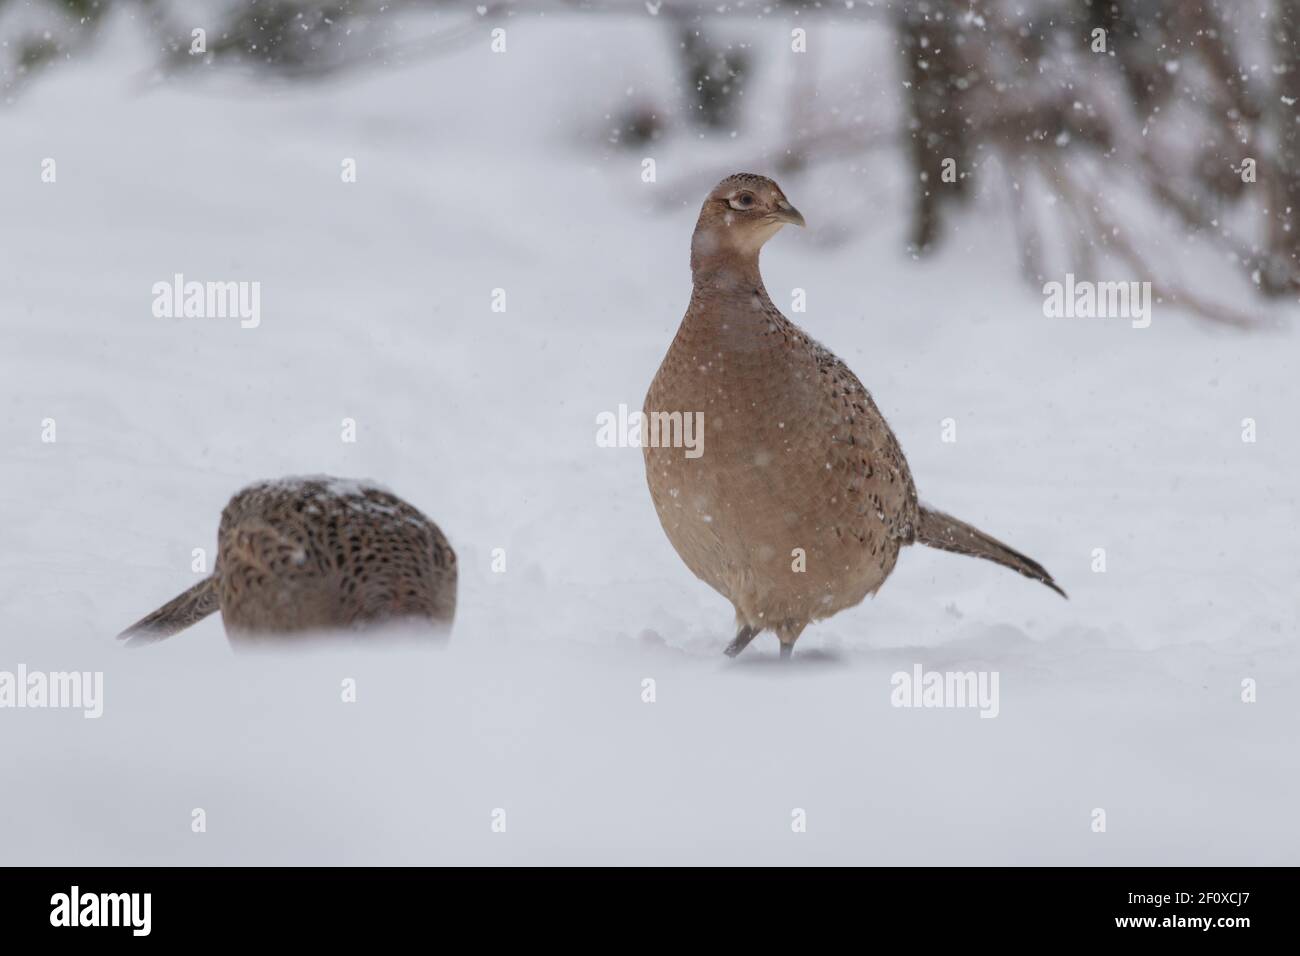 Zwei Weibliche Fasane (Phasianus Colchicus) Auf der Suche nach Essen im Schnee, während es schneit Stockfoto